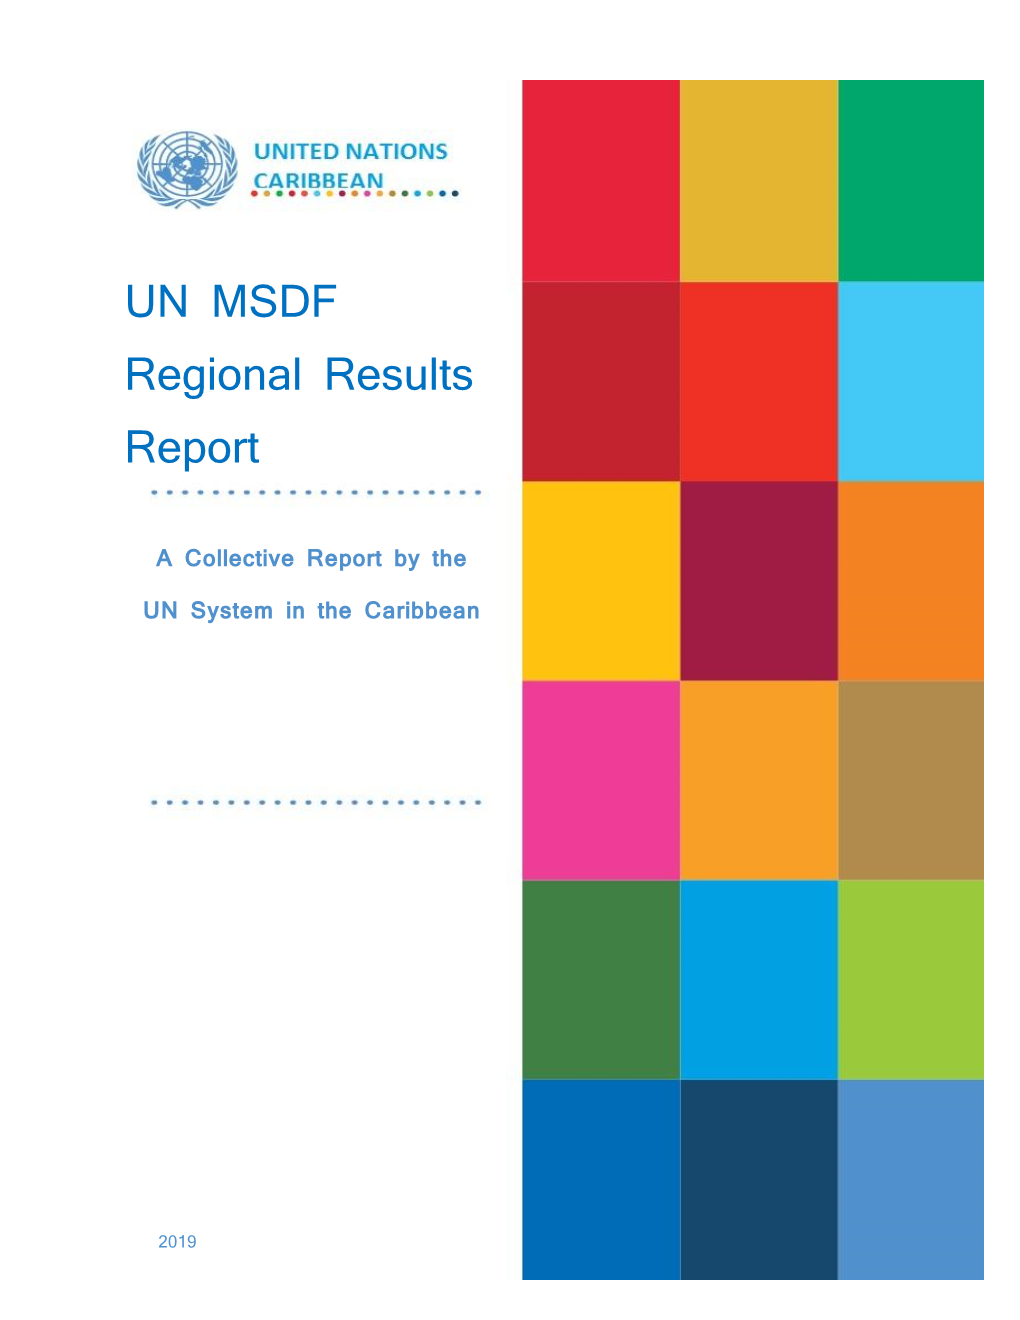 UN MSDF Regional Results Report